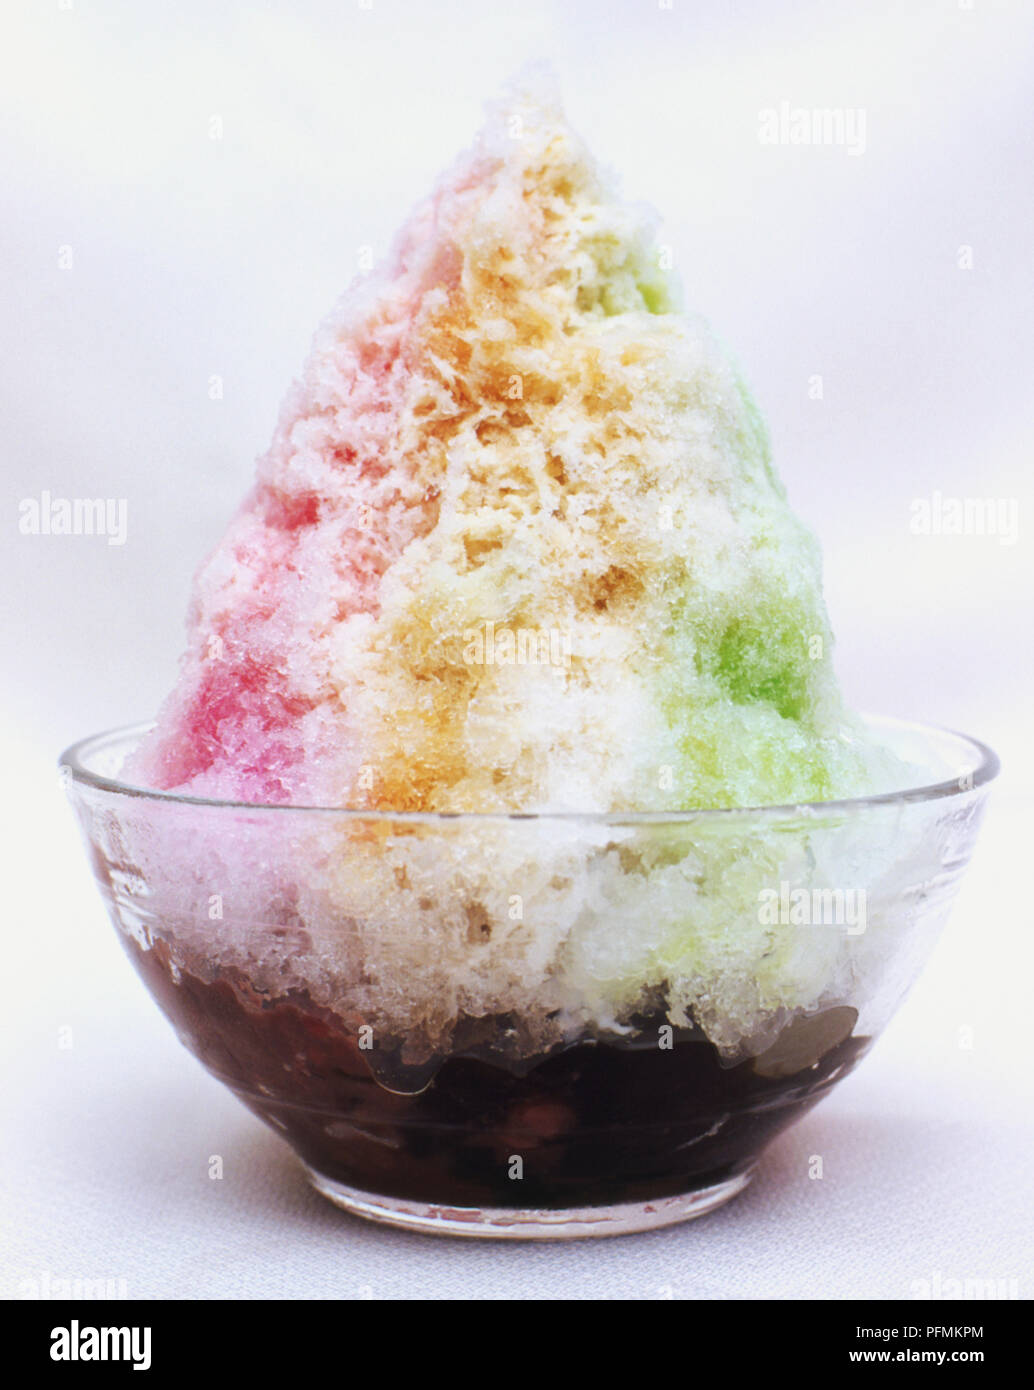 Eis kachang, beliebtes Dessert in Singapur, gesüßte Eis mit Mais, roten Bohnen und Gelee, ähnlich rosa grün-weiß gestreiften Sorbet, dunkle Basis in Glas Teller serviert. Stockfoto